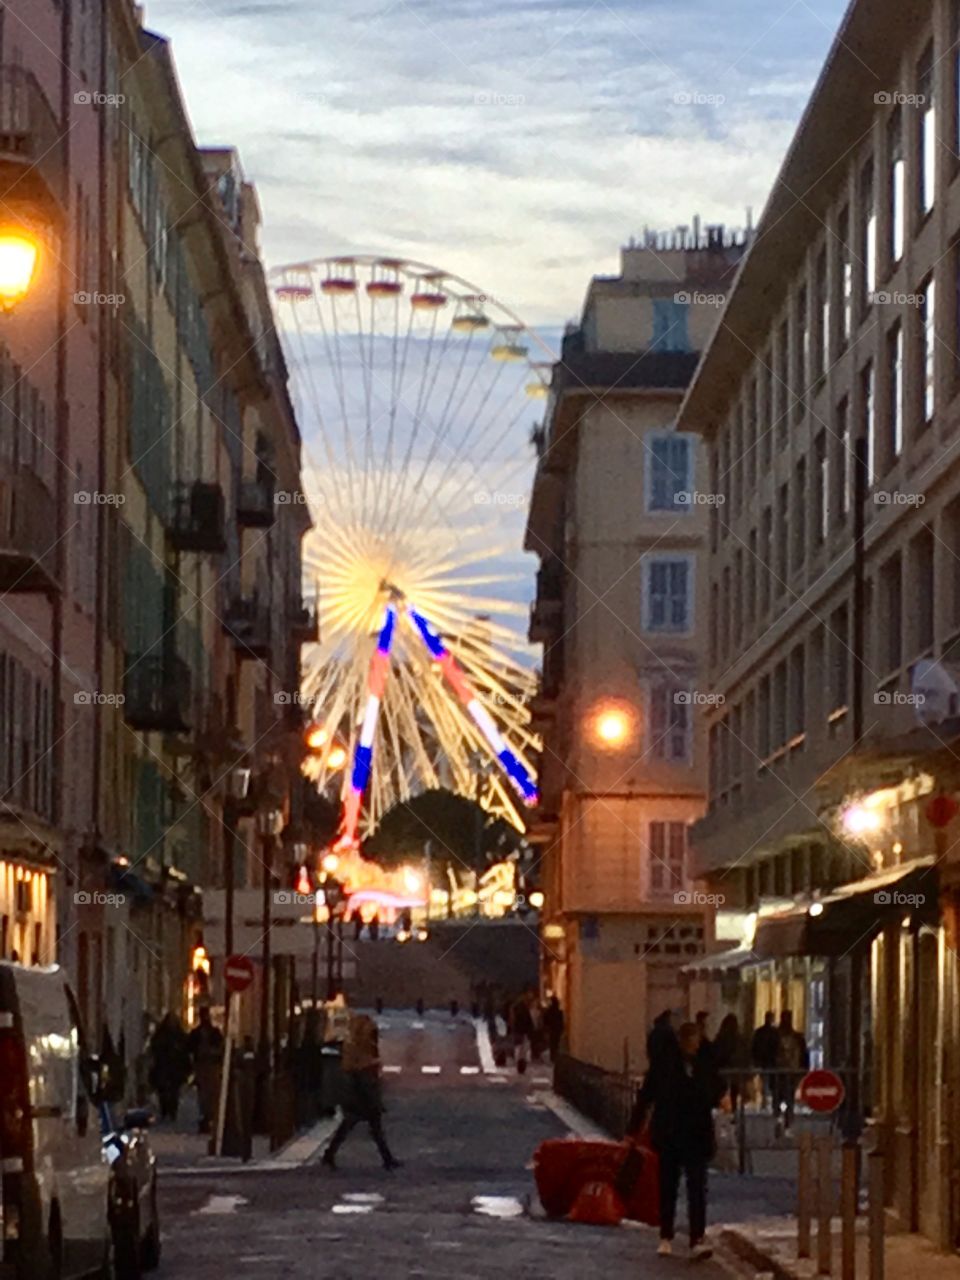 Ferris wheel in Nice. 